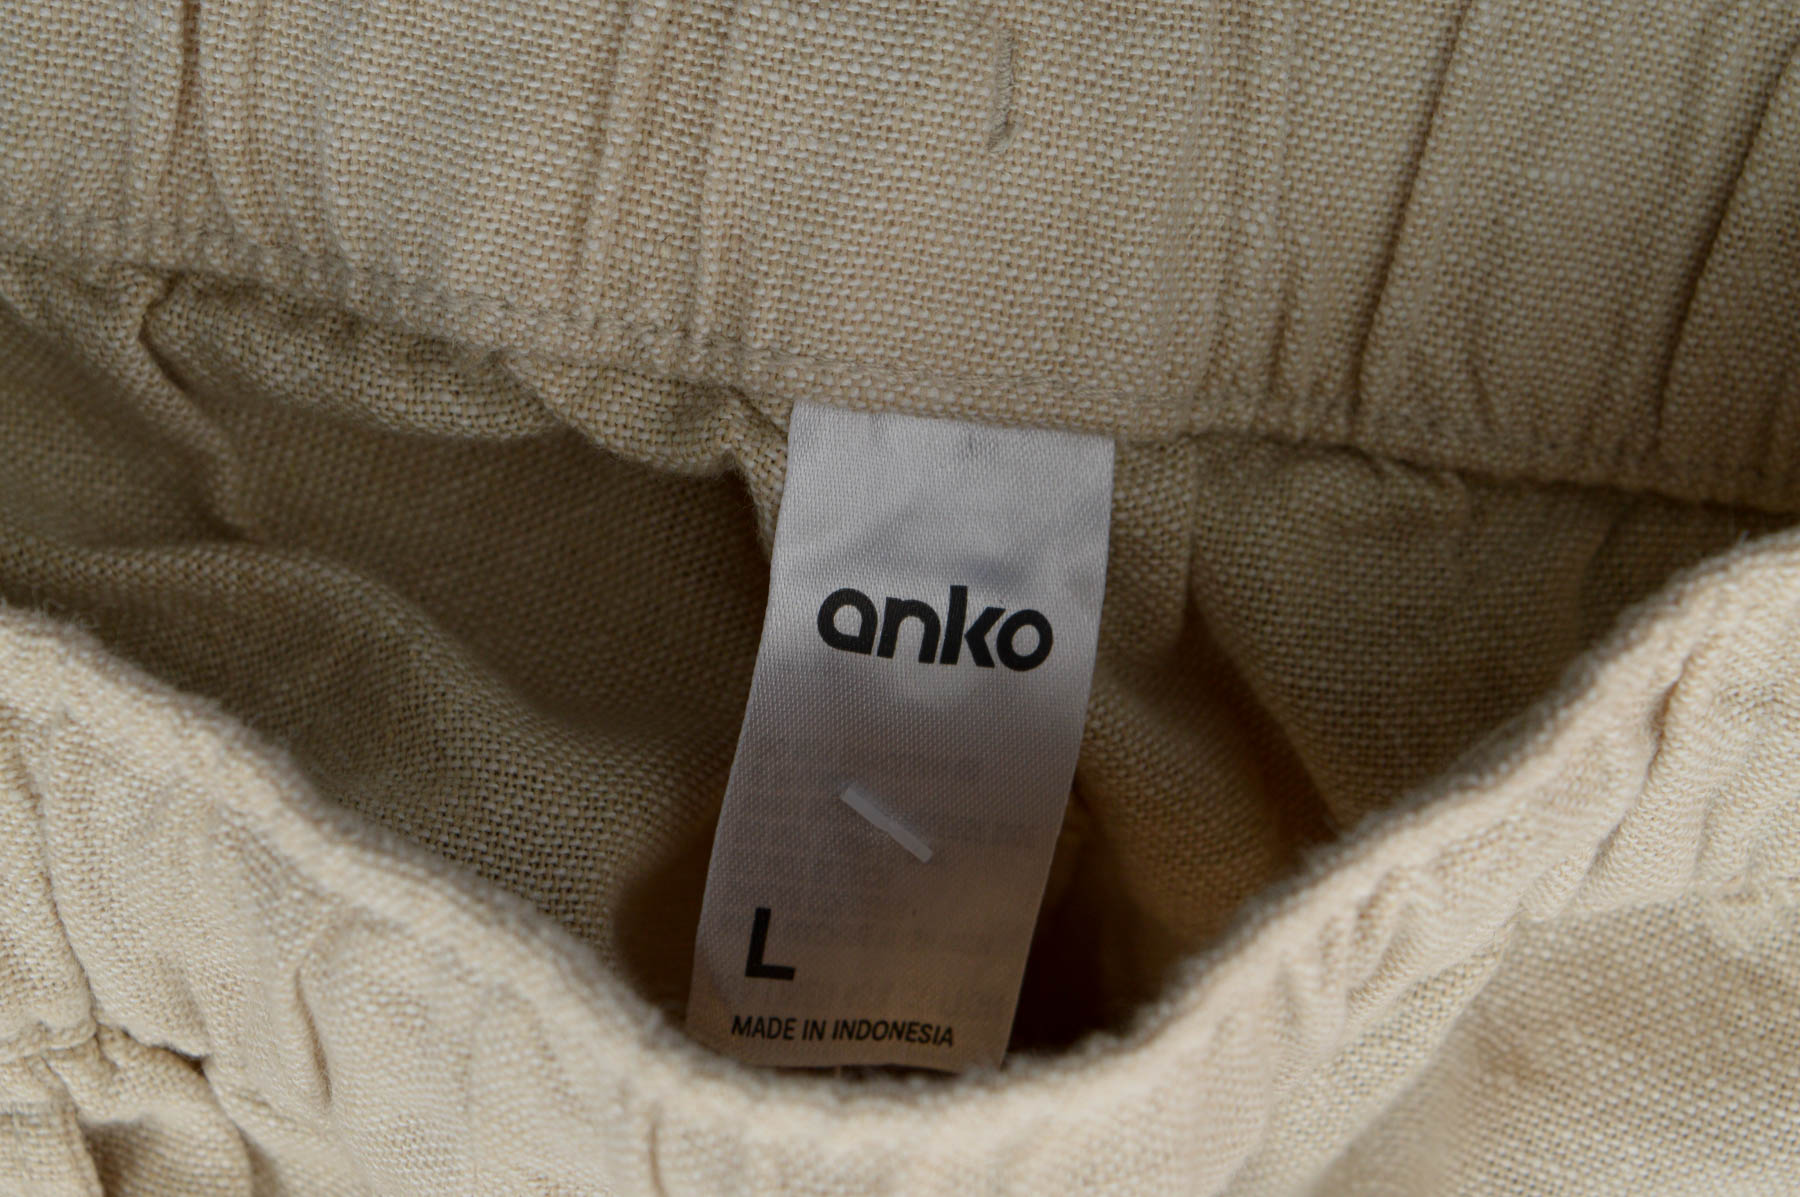 Męskie spodnie - Anko - 2